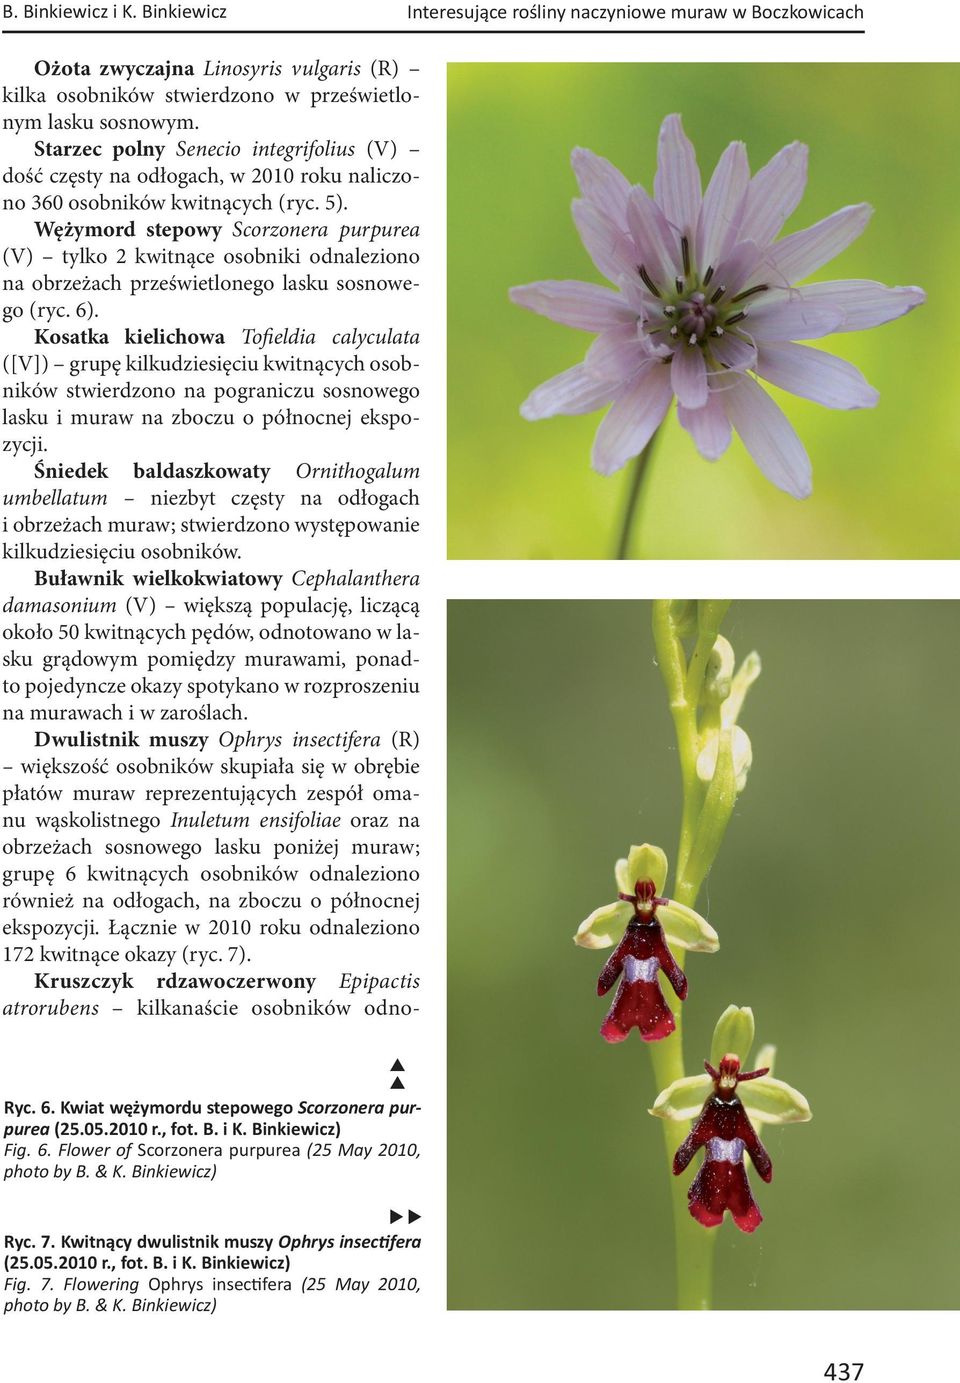 Wężymord stepowy Scorzonera purpurea (V) tylko 2 kwitnące osobniki odnaleziono na obrzeżach prześwietlonego lasku sosnowego (ryc. 6).